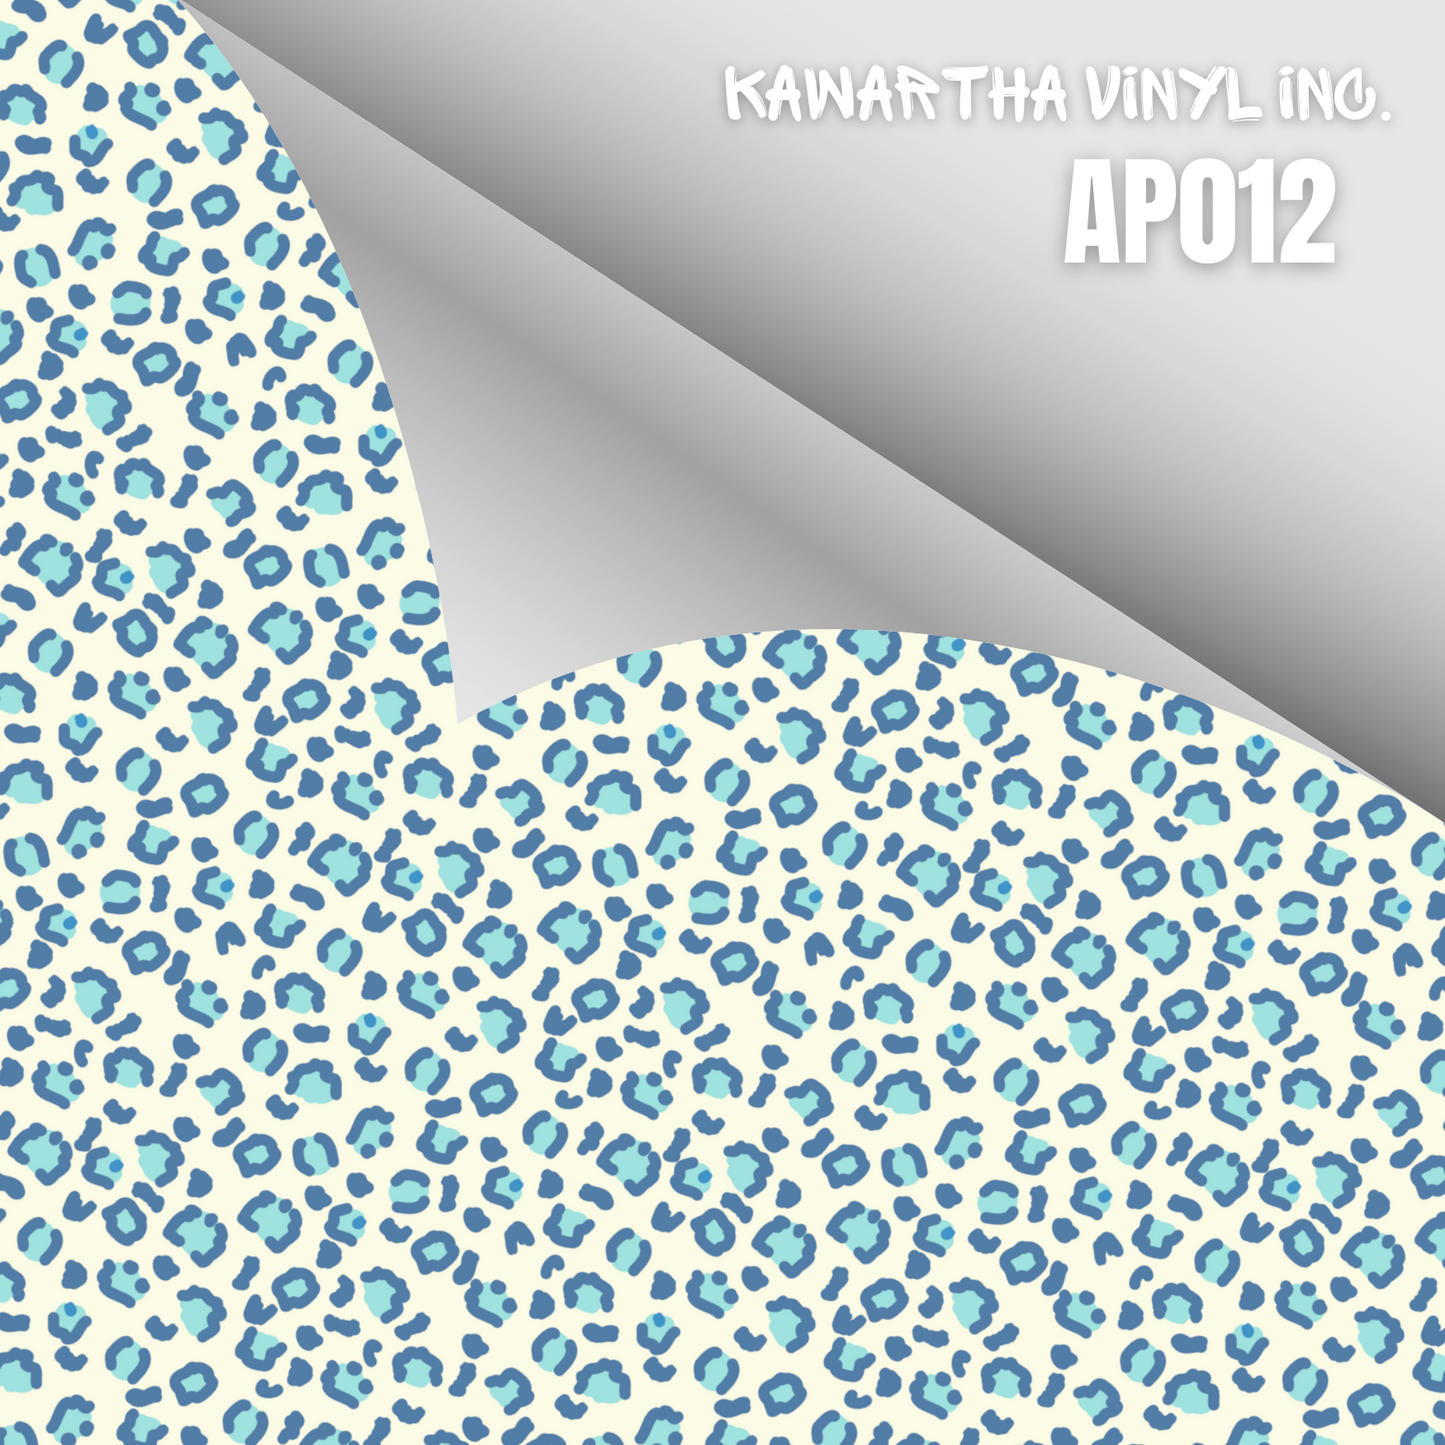 AP012 Adhesive & HTV Patterns